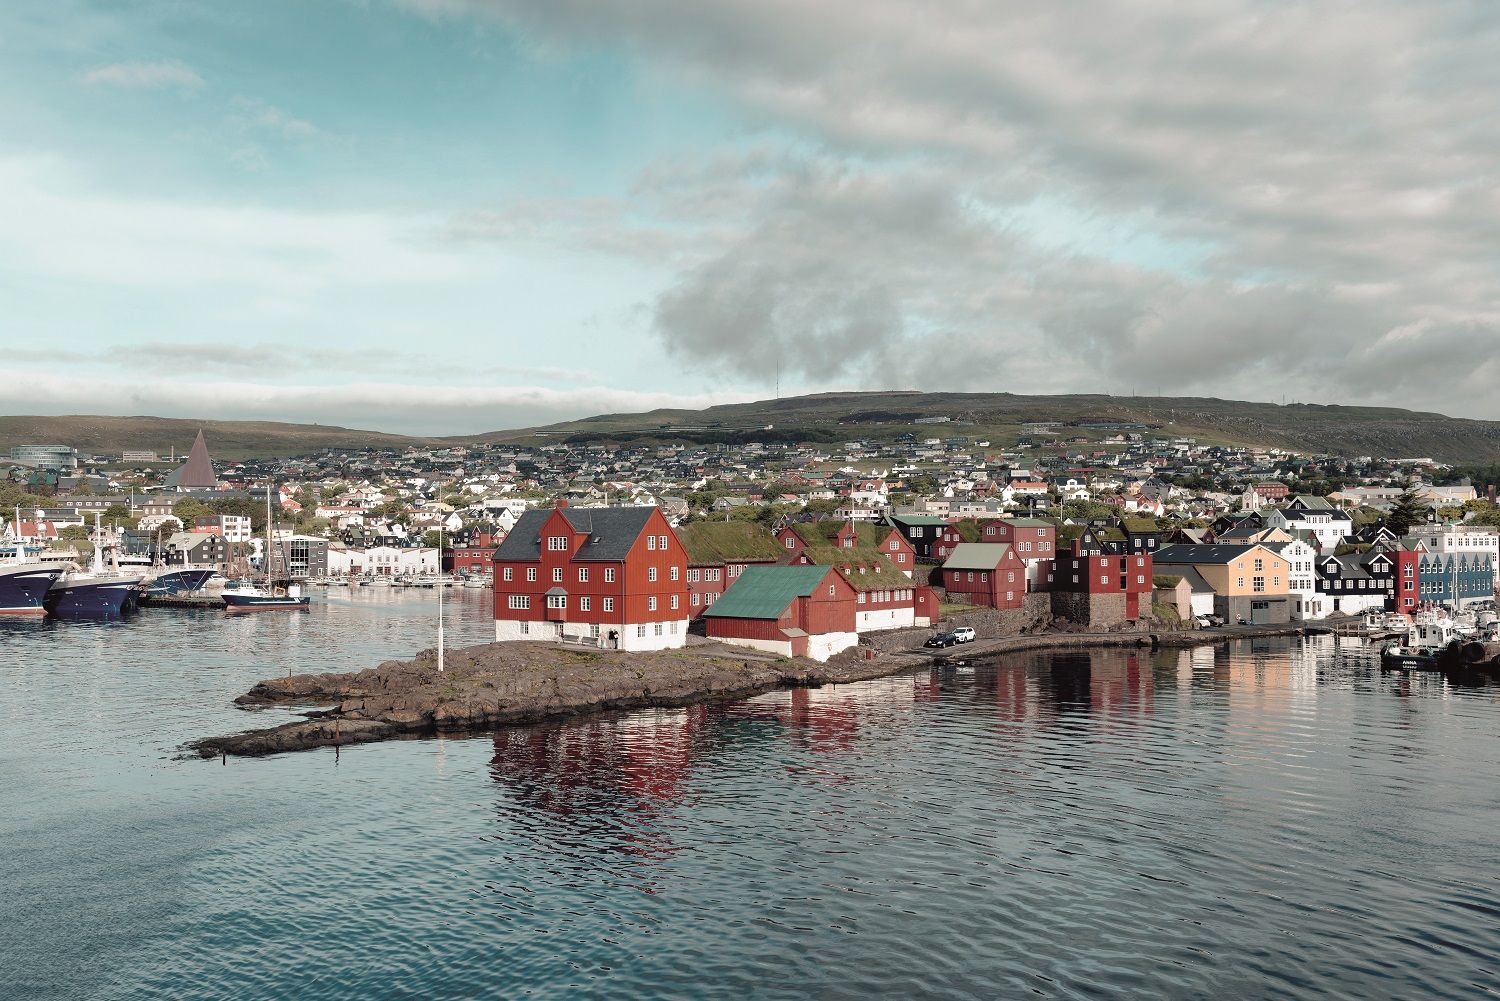 Casas típicas en el puerto de Tórshavn.